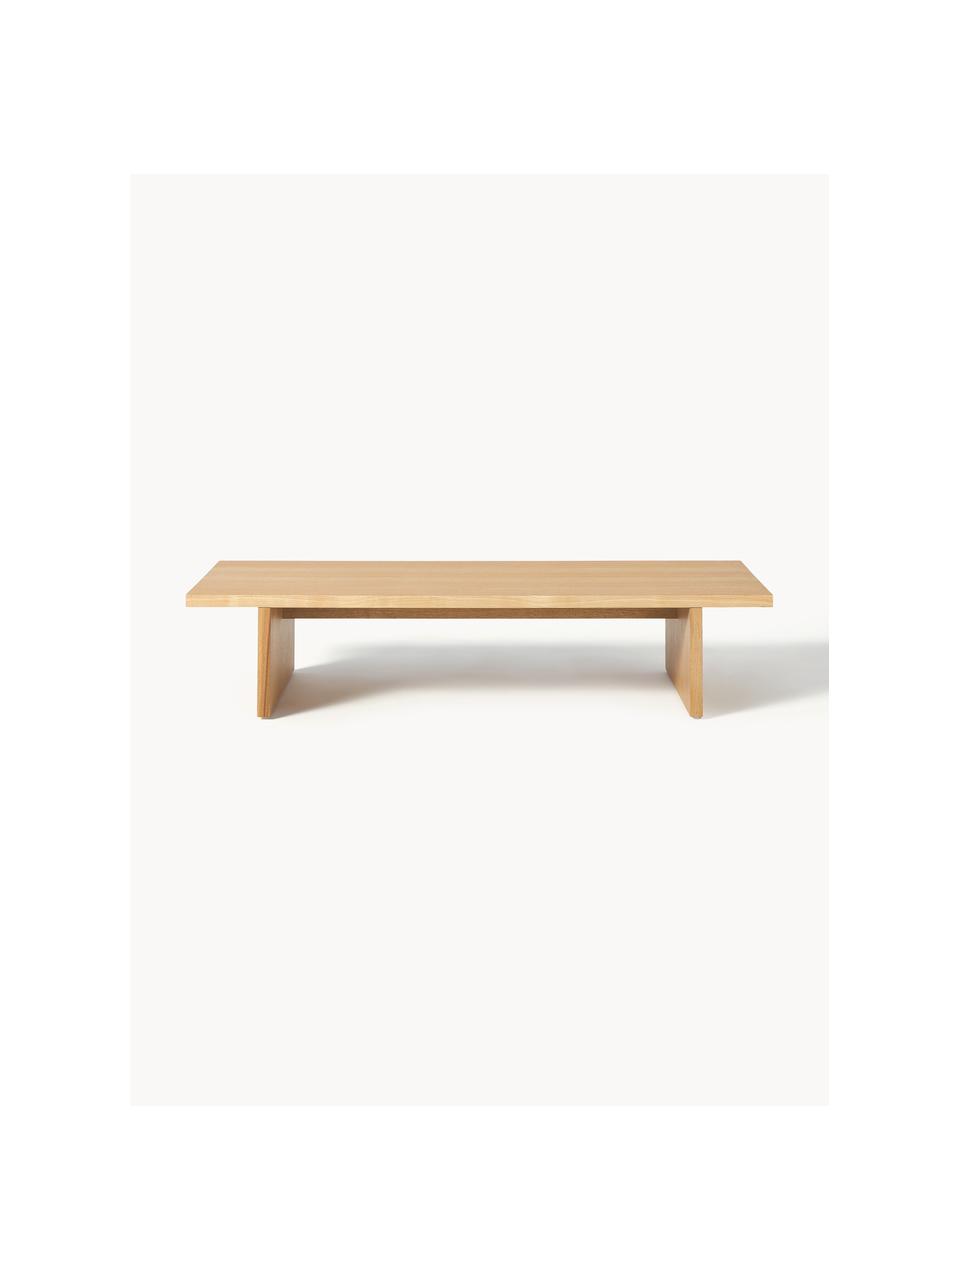 Nízký dřevěný konferenční stolek Toni, Lakovaná MDF deska (dřevovláknitá deska střední hustoty) s dubovou dýhou

Tento produkt je vyroben z udržitelných zdrojů dřeva s certifikací FSC®., Jasanové dřevo, Š 120 cm, V 25 cm